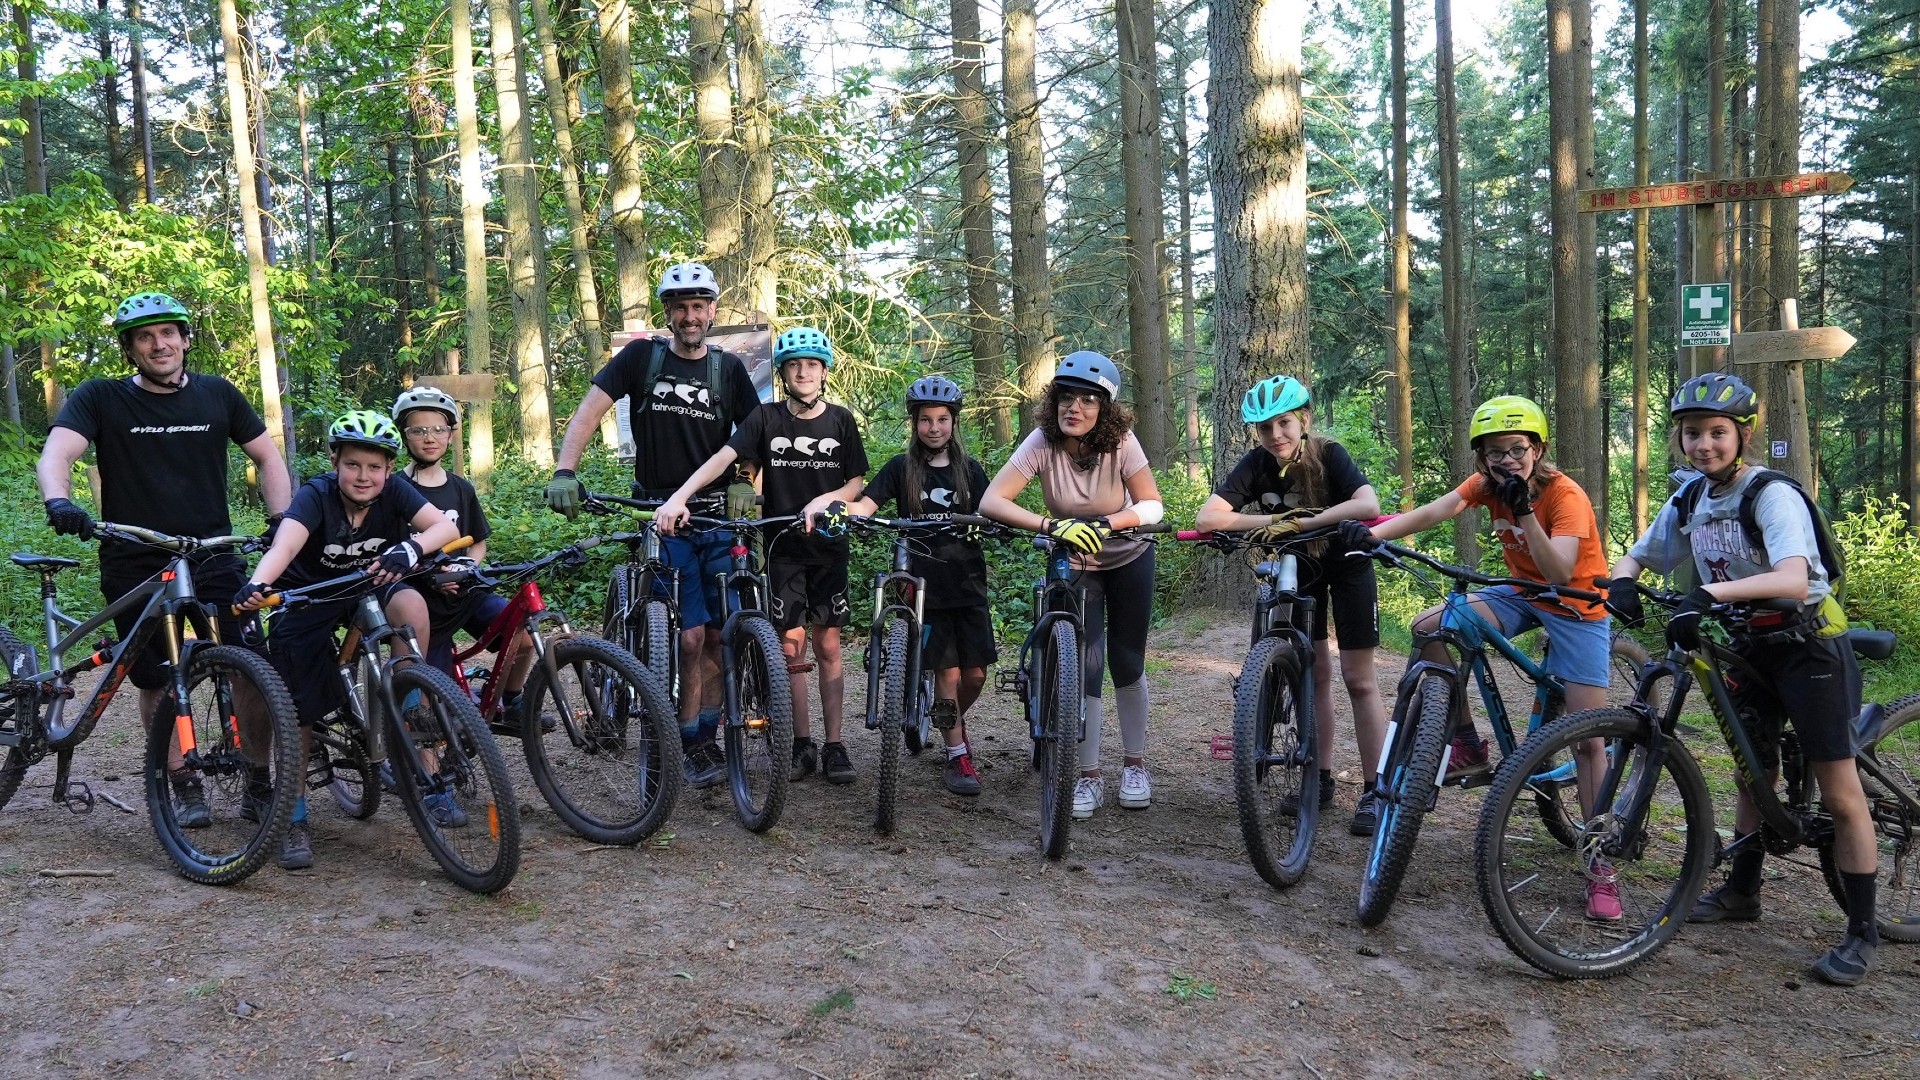 Gruppenfoto: Sieben Kinder, zwei Erwachsene und Reporterin Tessniem stehen mit Helmen und Mountainbikes im Wald und lächeln in die Kamera.